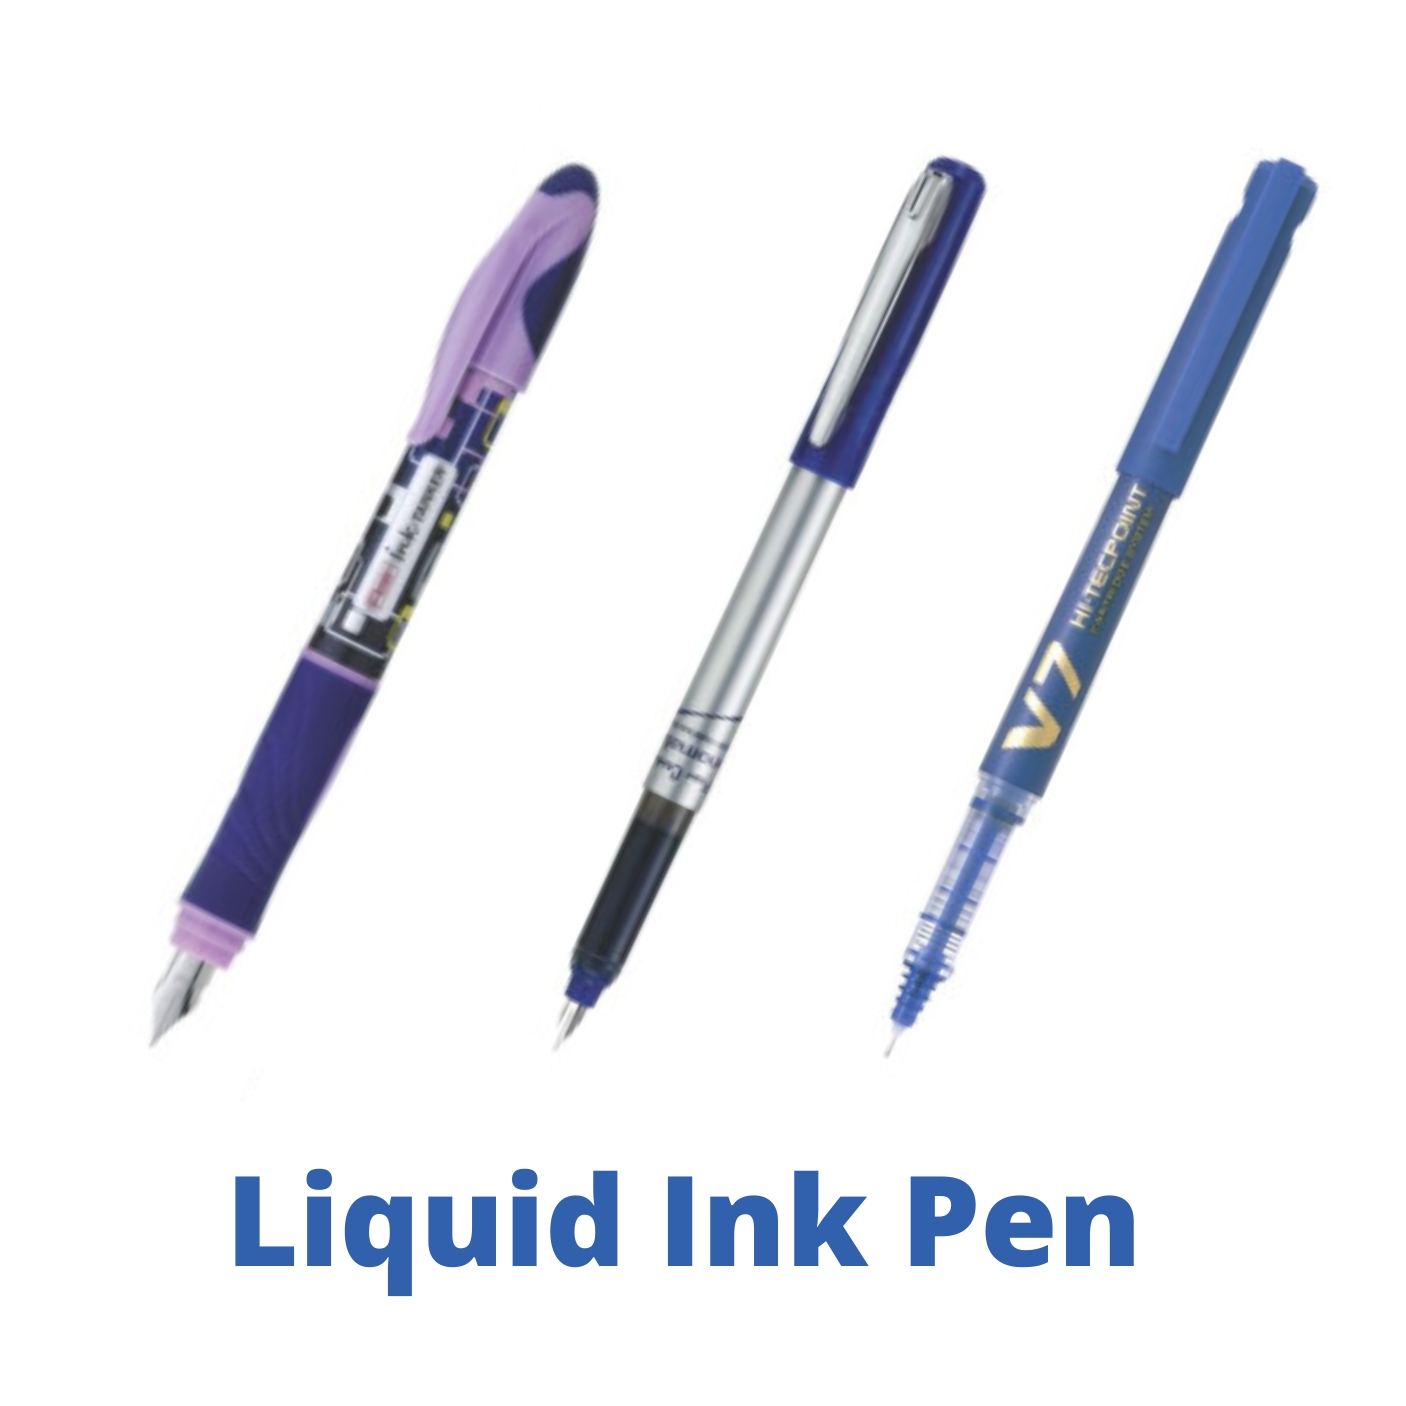 Liquid Ink Pen